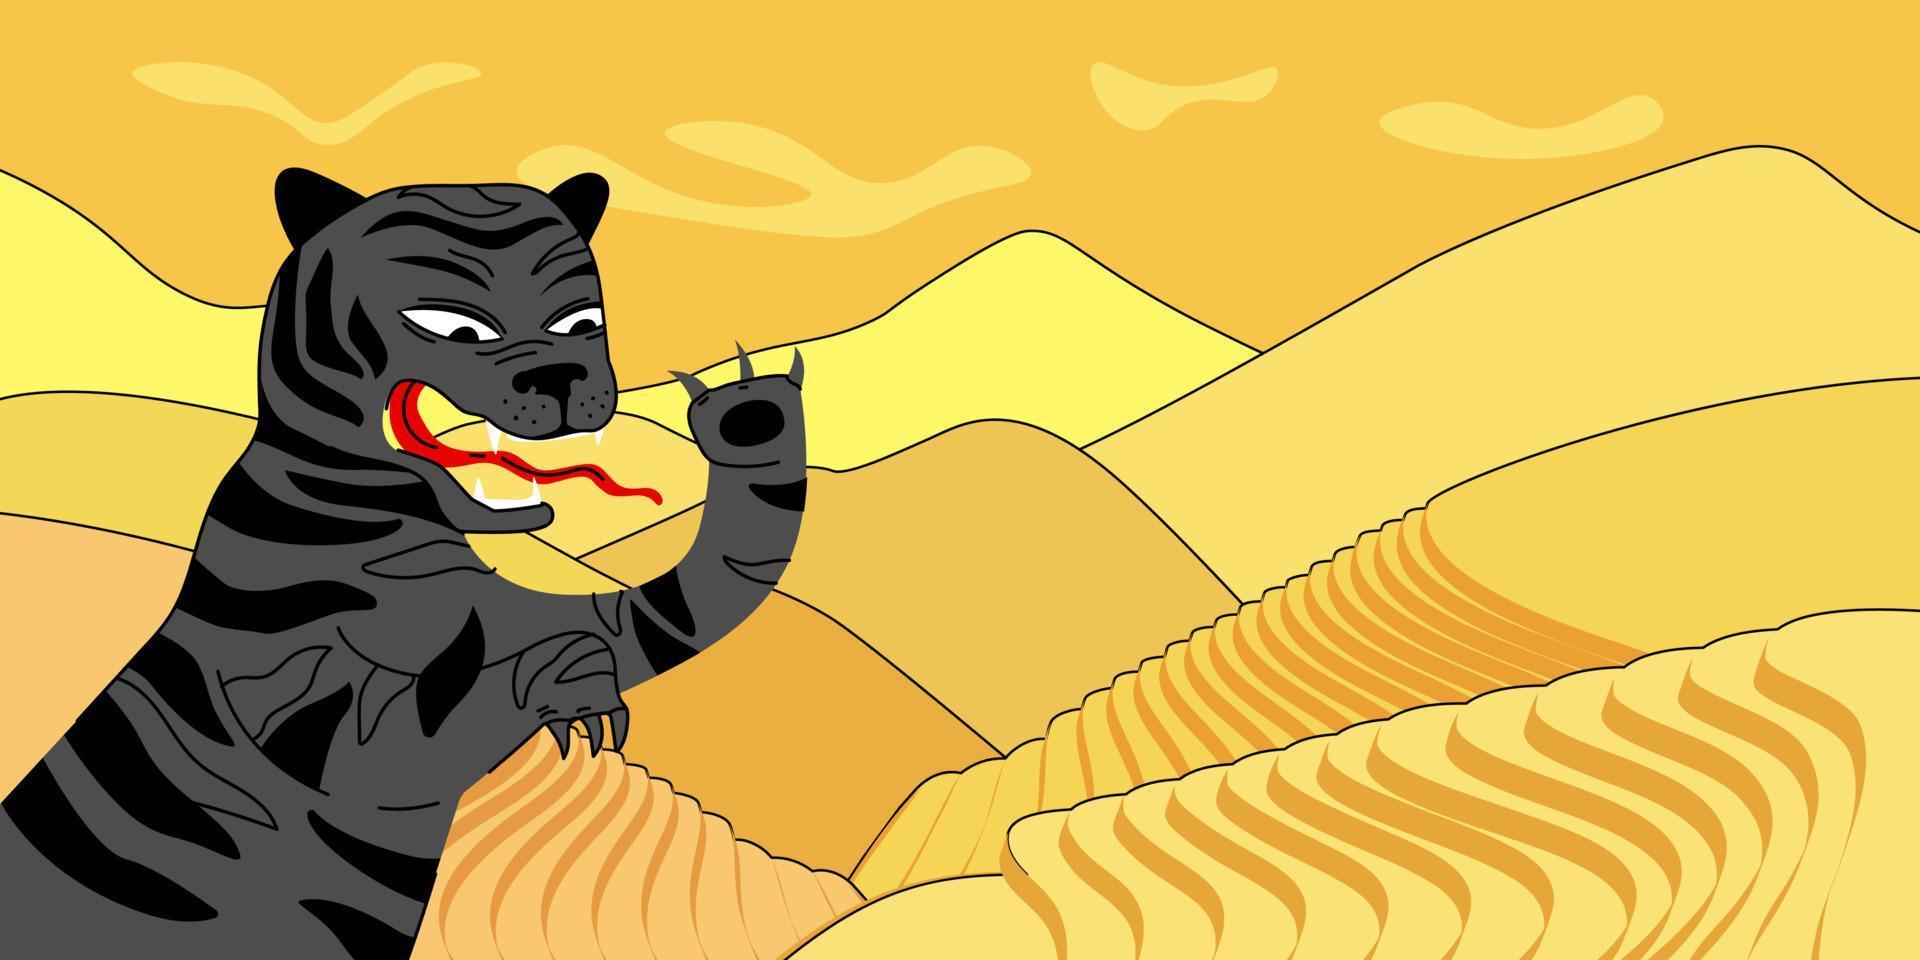 cartel del año nuevo chino del tigre de agua negra. tarjeta de felicitación con símbolo de astrología anual tradicional china. banner dibujado a mano para el calendario oriental 2022. campos asiáticos dibujo vectorial abstracto popular vector